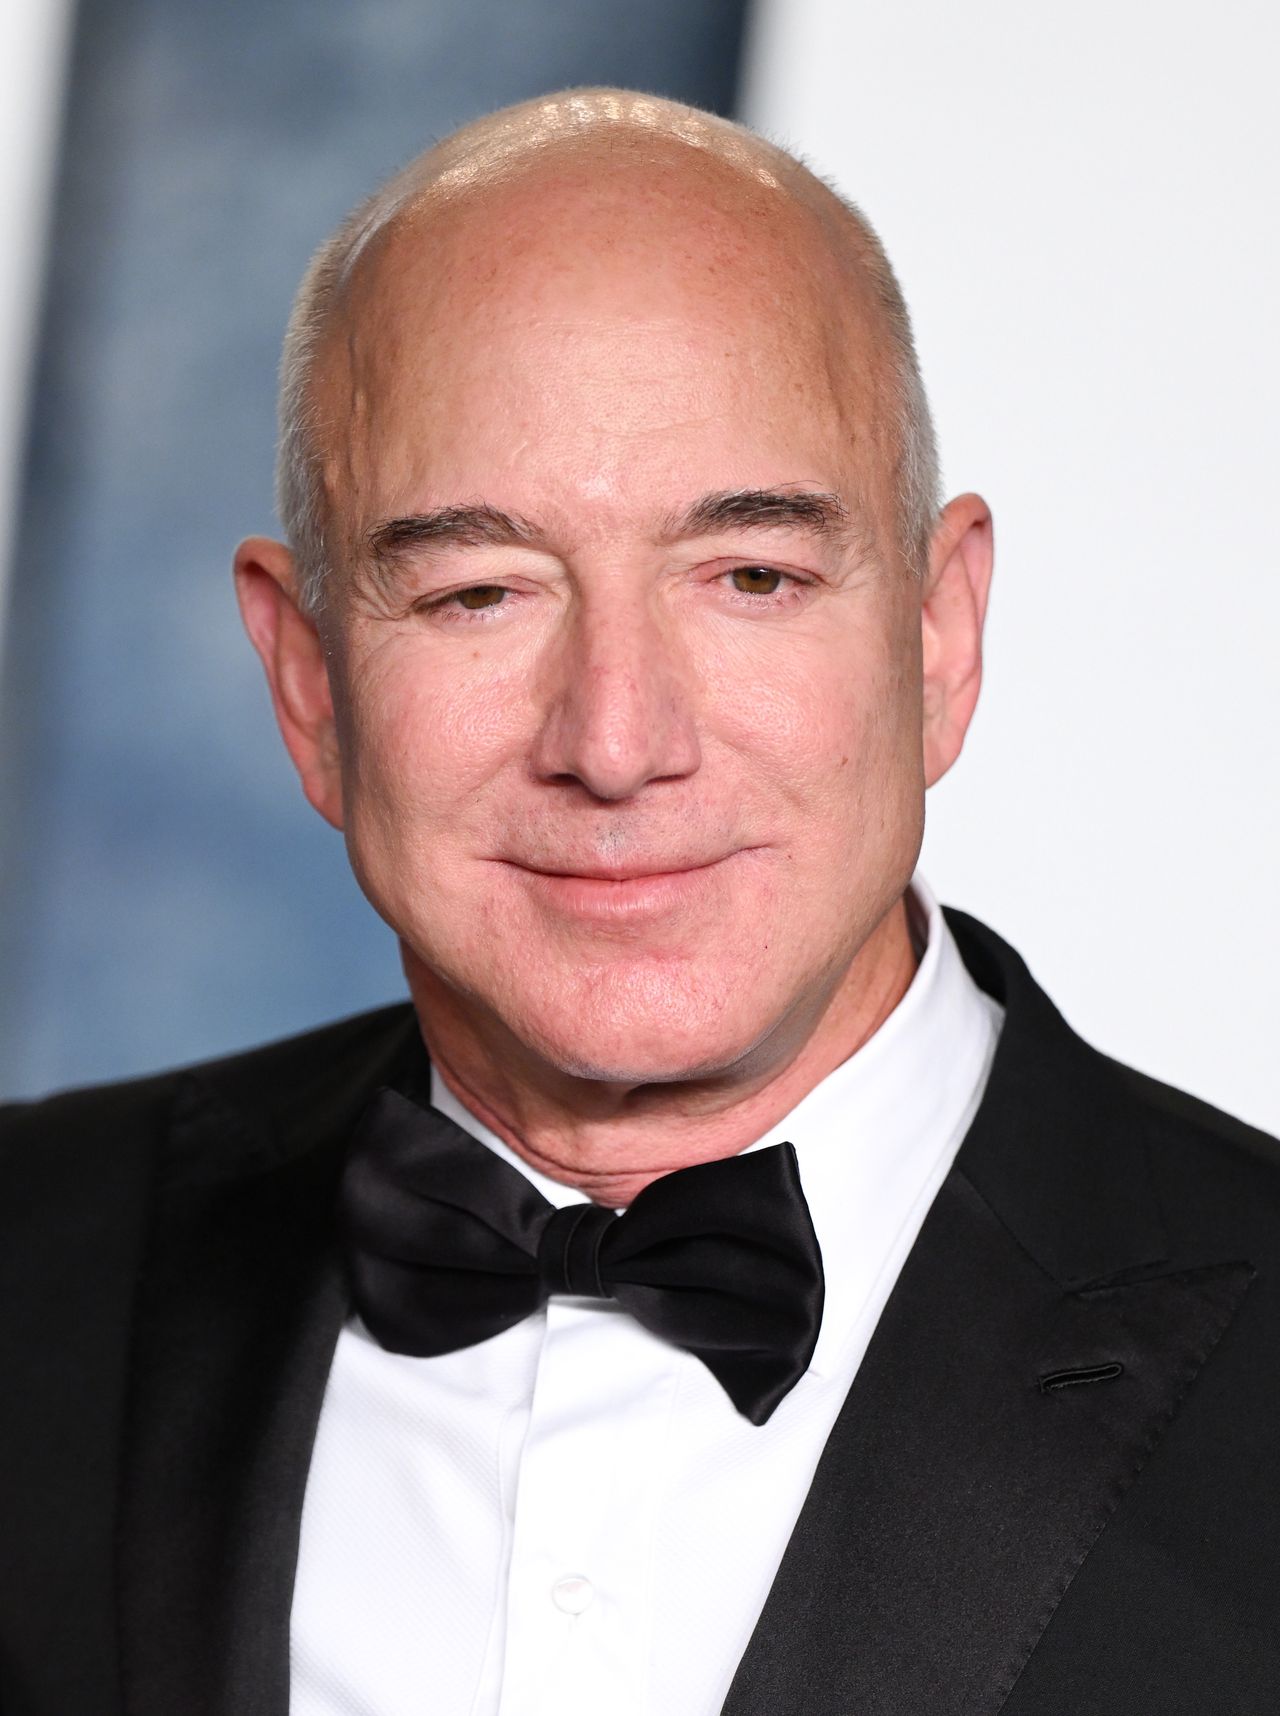 Jeff Bezos sells $2 billion worth of Amazon stock